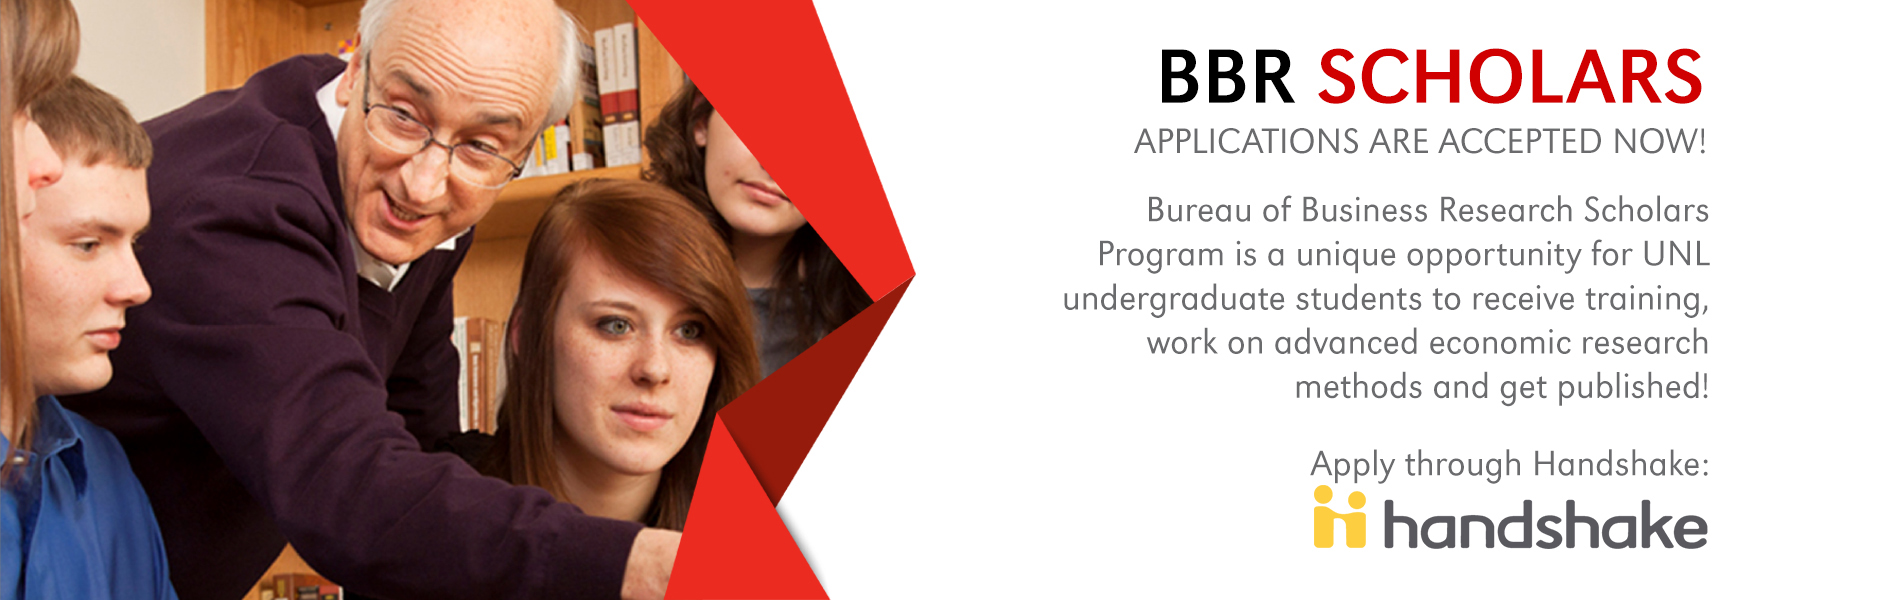 BBR Scholars Jobs